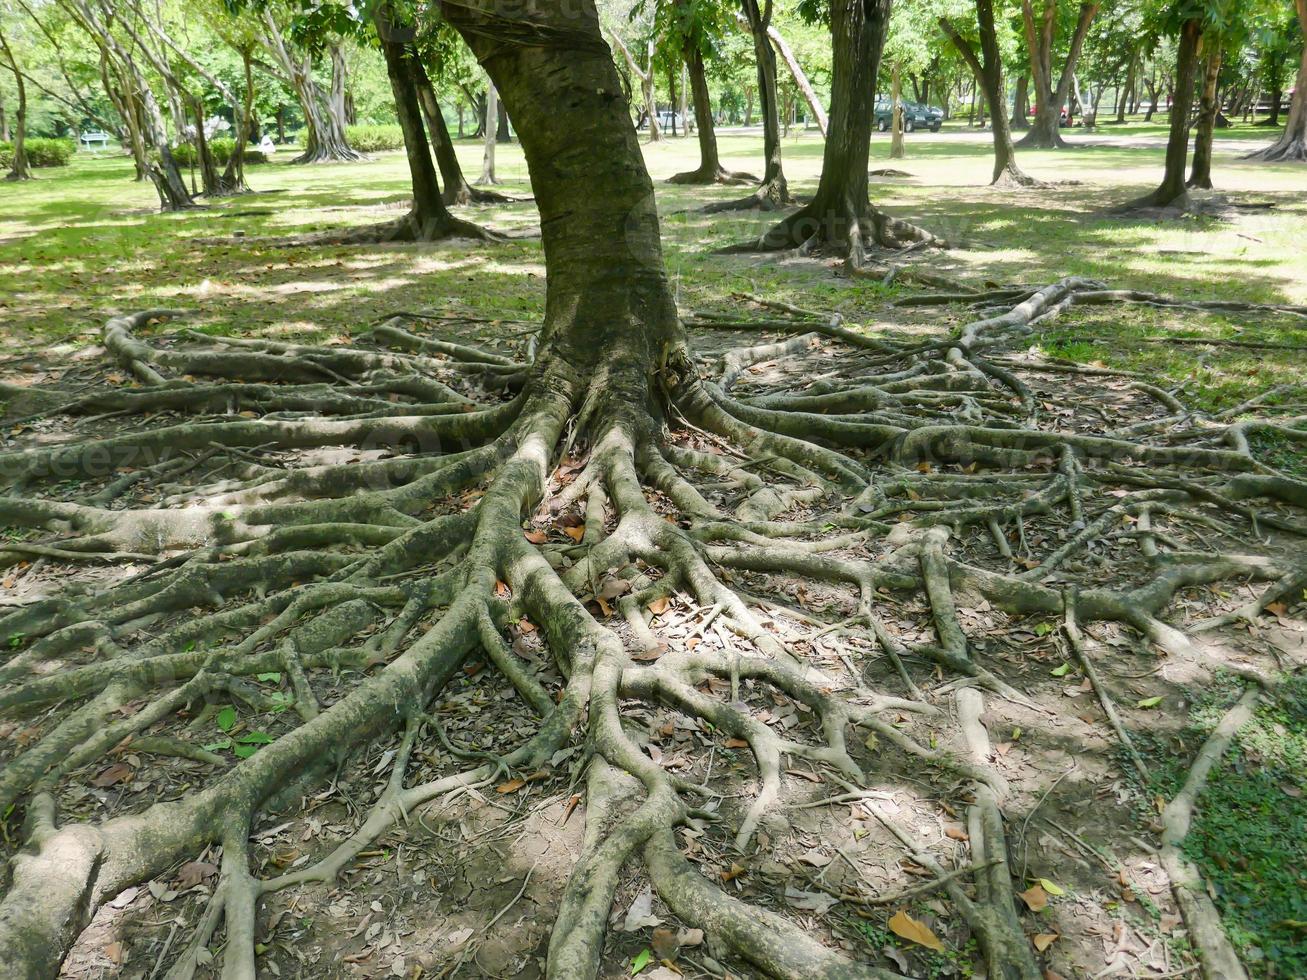 uma grande árvore com raízes cobrindo o chão, uma grande árvore no jardim foto